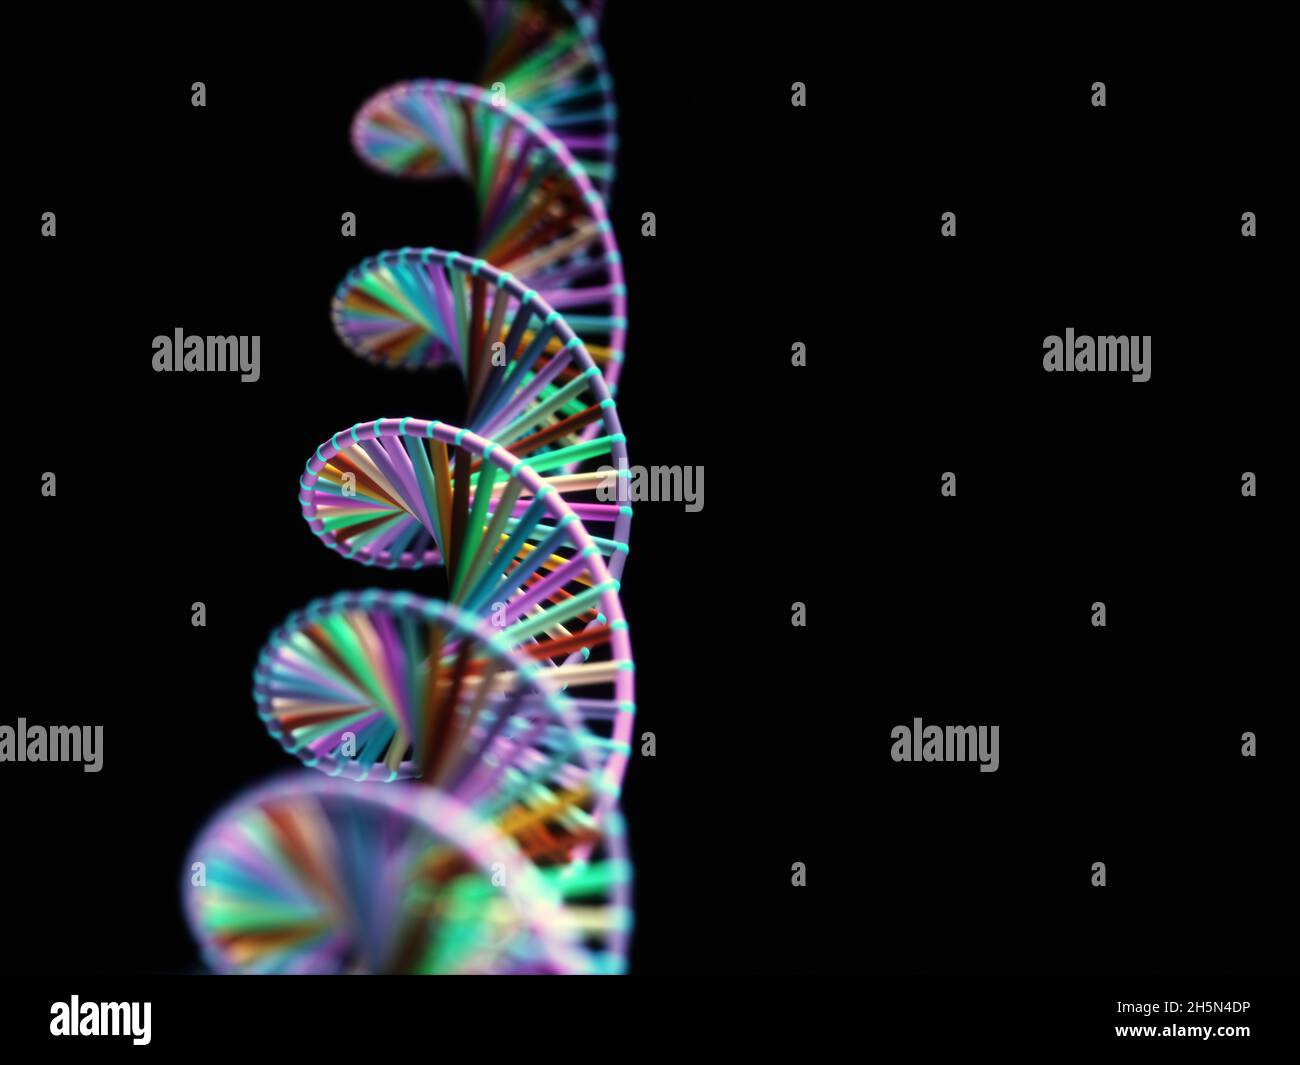 Immagine astratta dei codici genetici DNA. Immagine concettuale da utilizzare come sfondo. Illustrazione 3D. Foto Stock